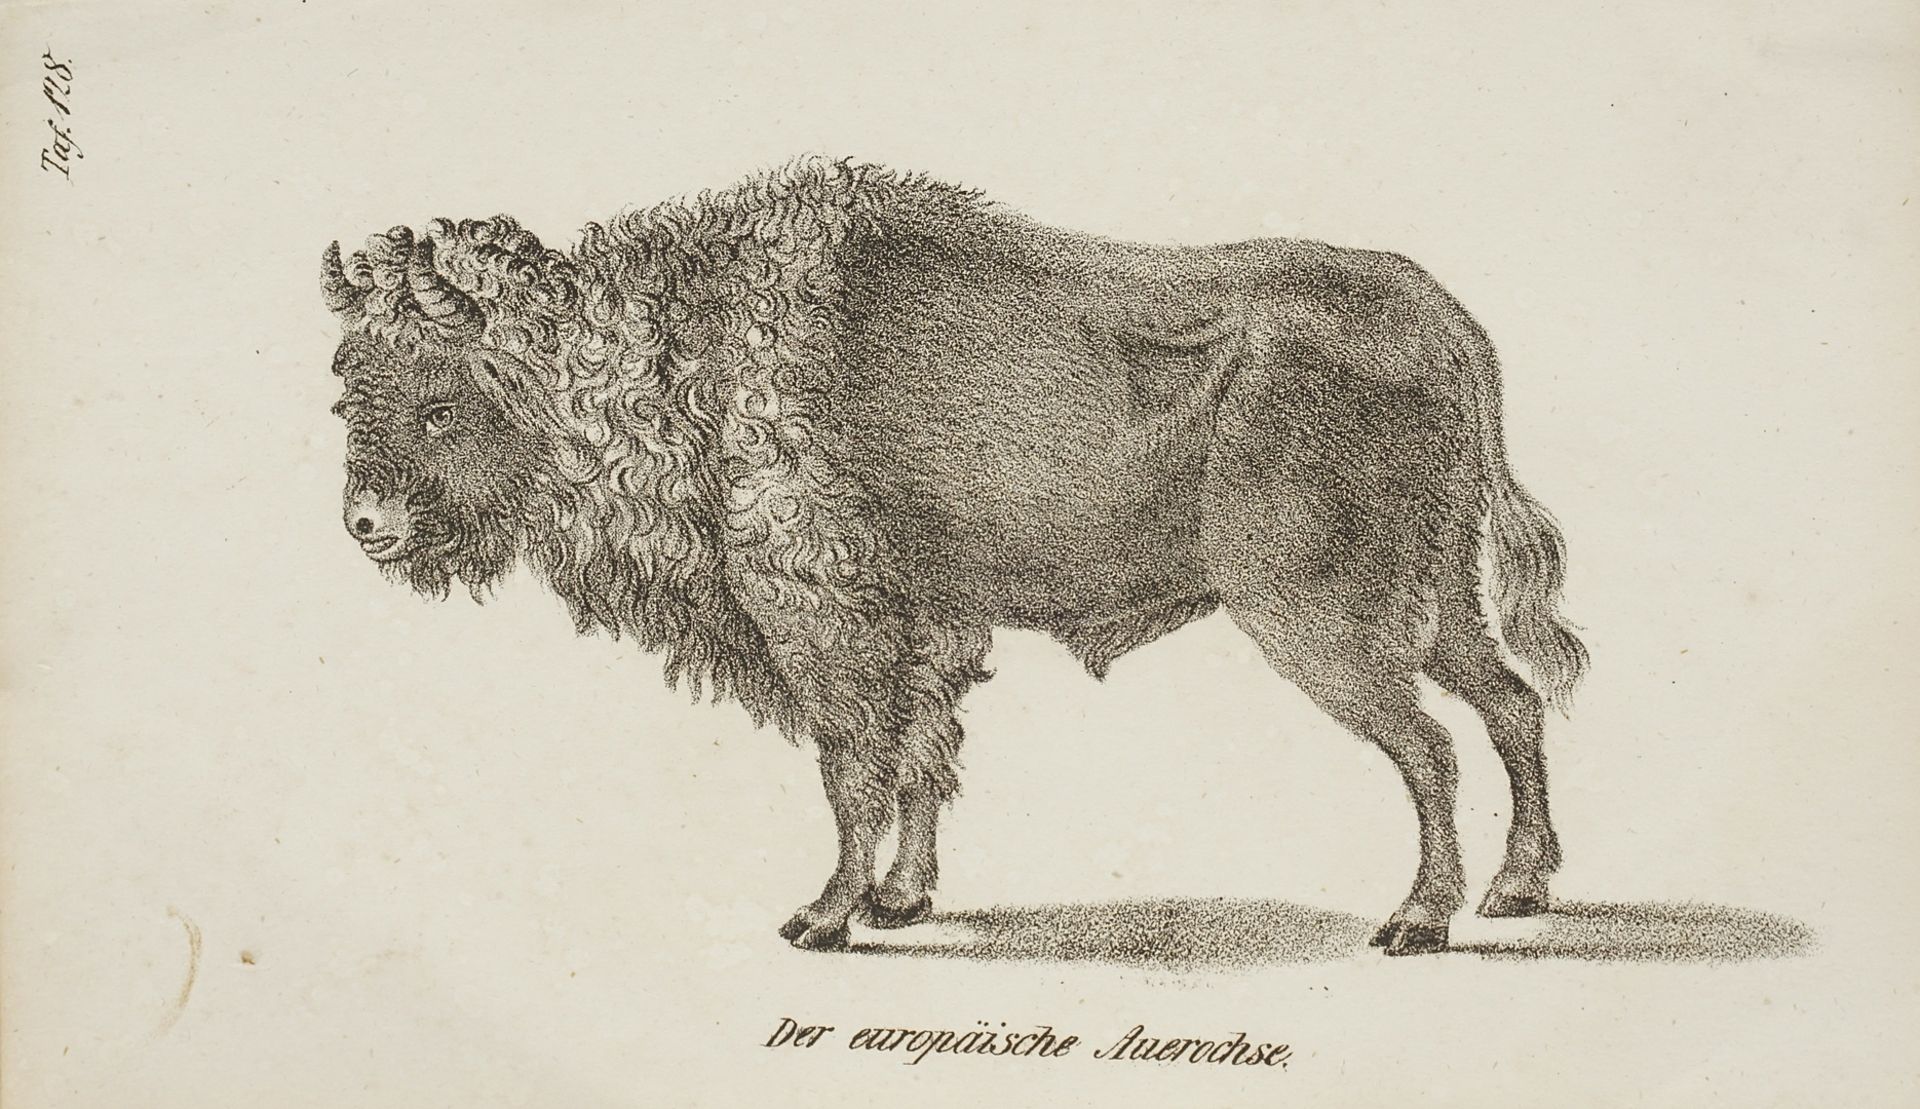 The European Aurochs